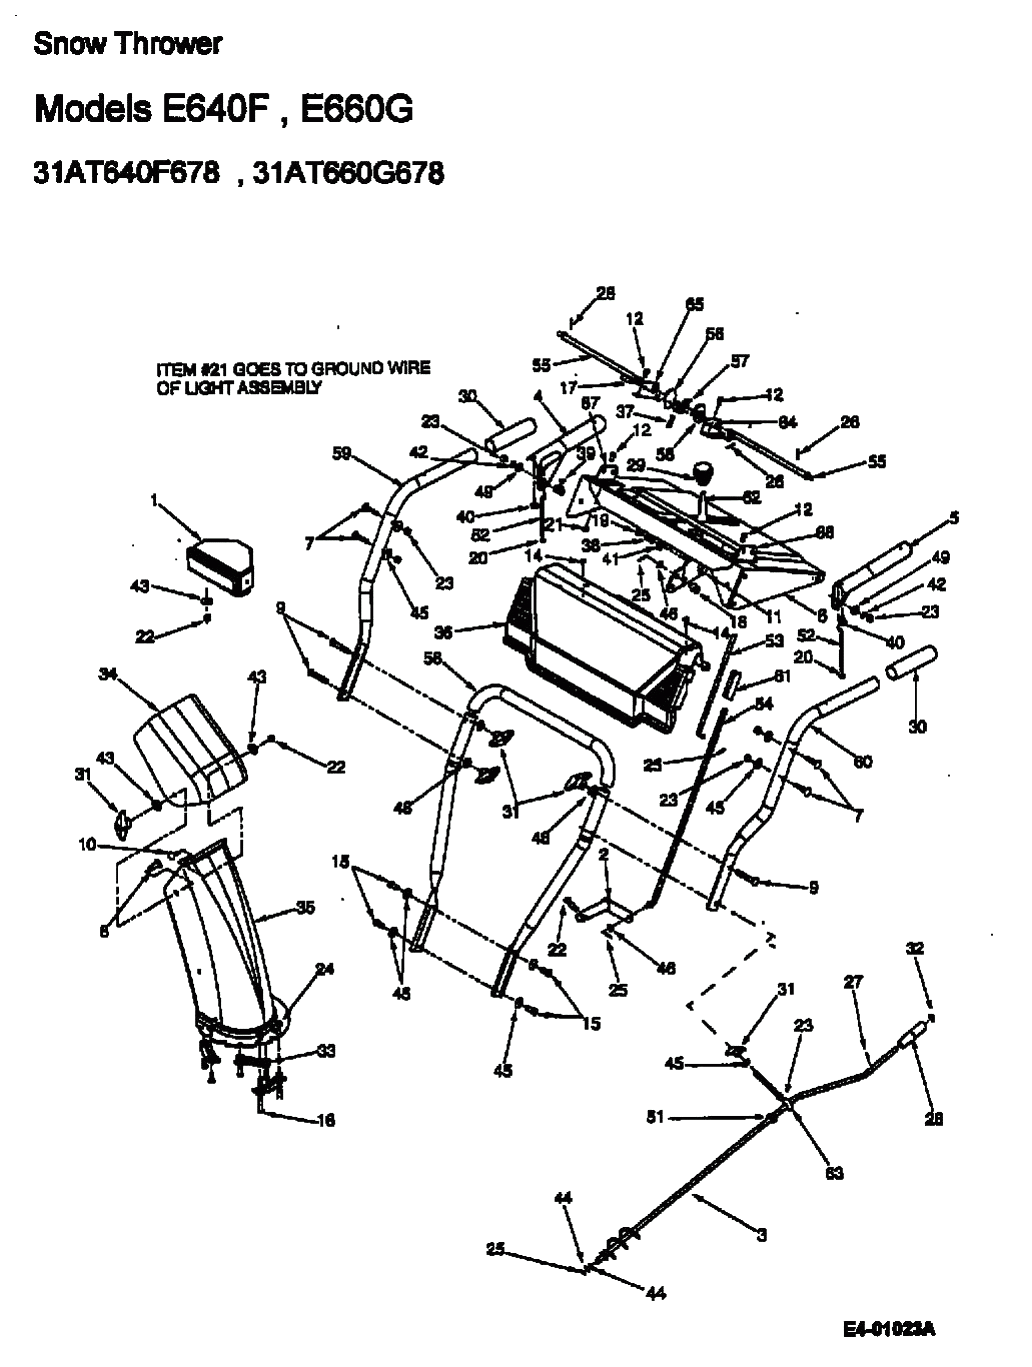 MTD Артикул 31AE640F678 (год выпуска 2001). Приборная панель, Разгрузочный желоб, ручка